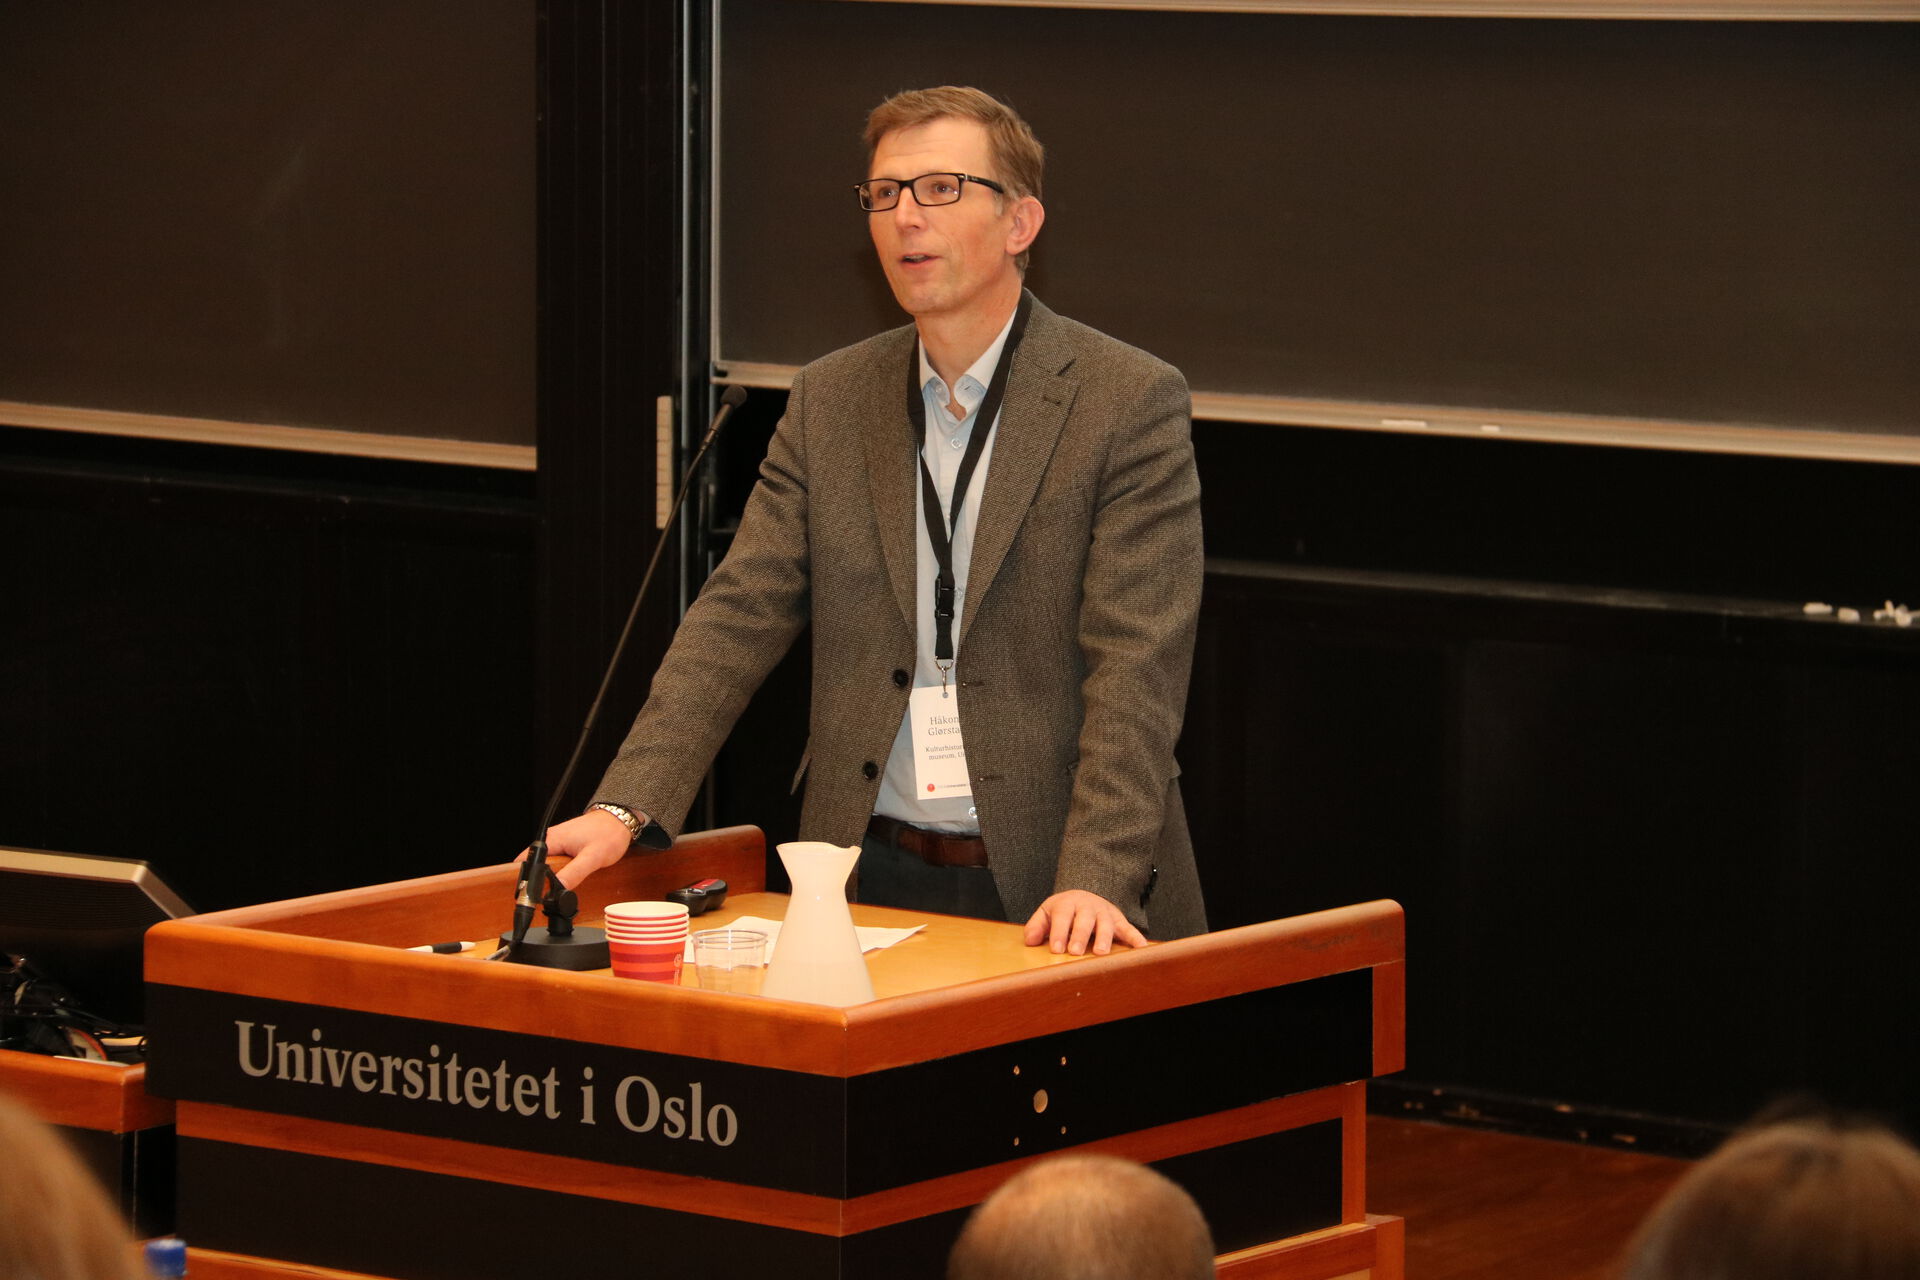 Mann i lys skjorte og mørk dressjakke bak en talerstol i en forelesningssal med påskriften "Universitetet i Oslo." 